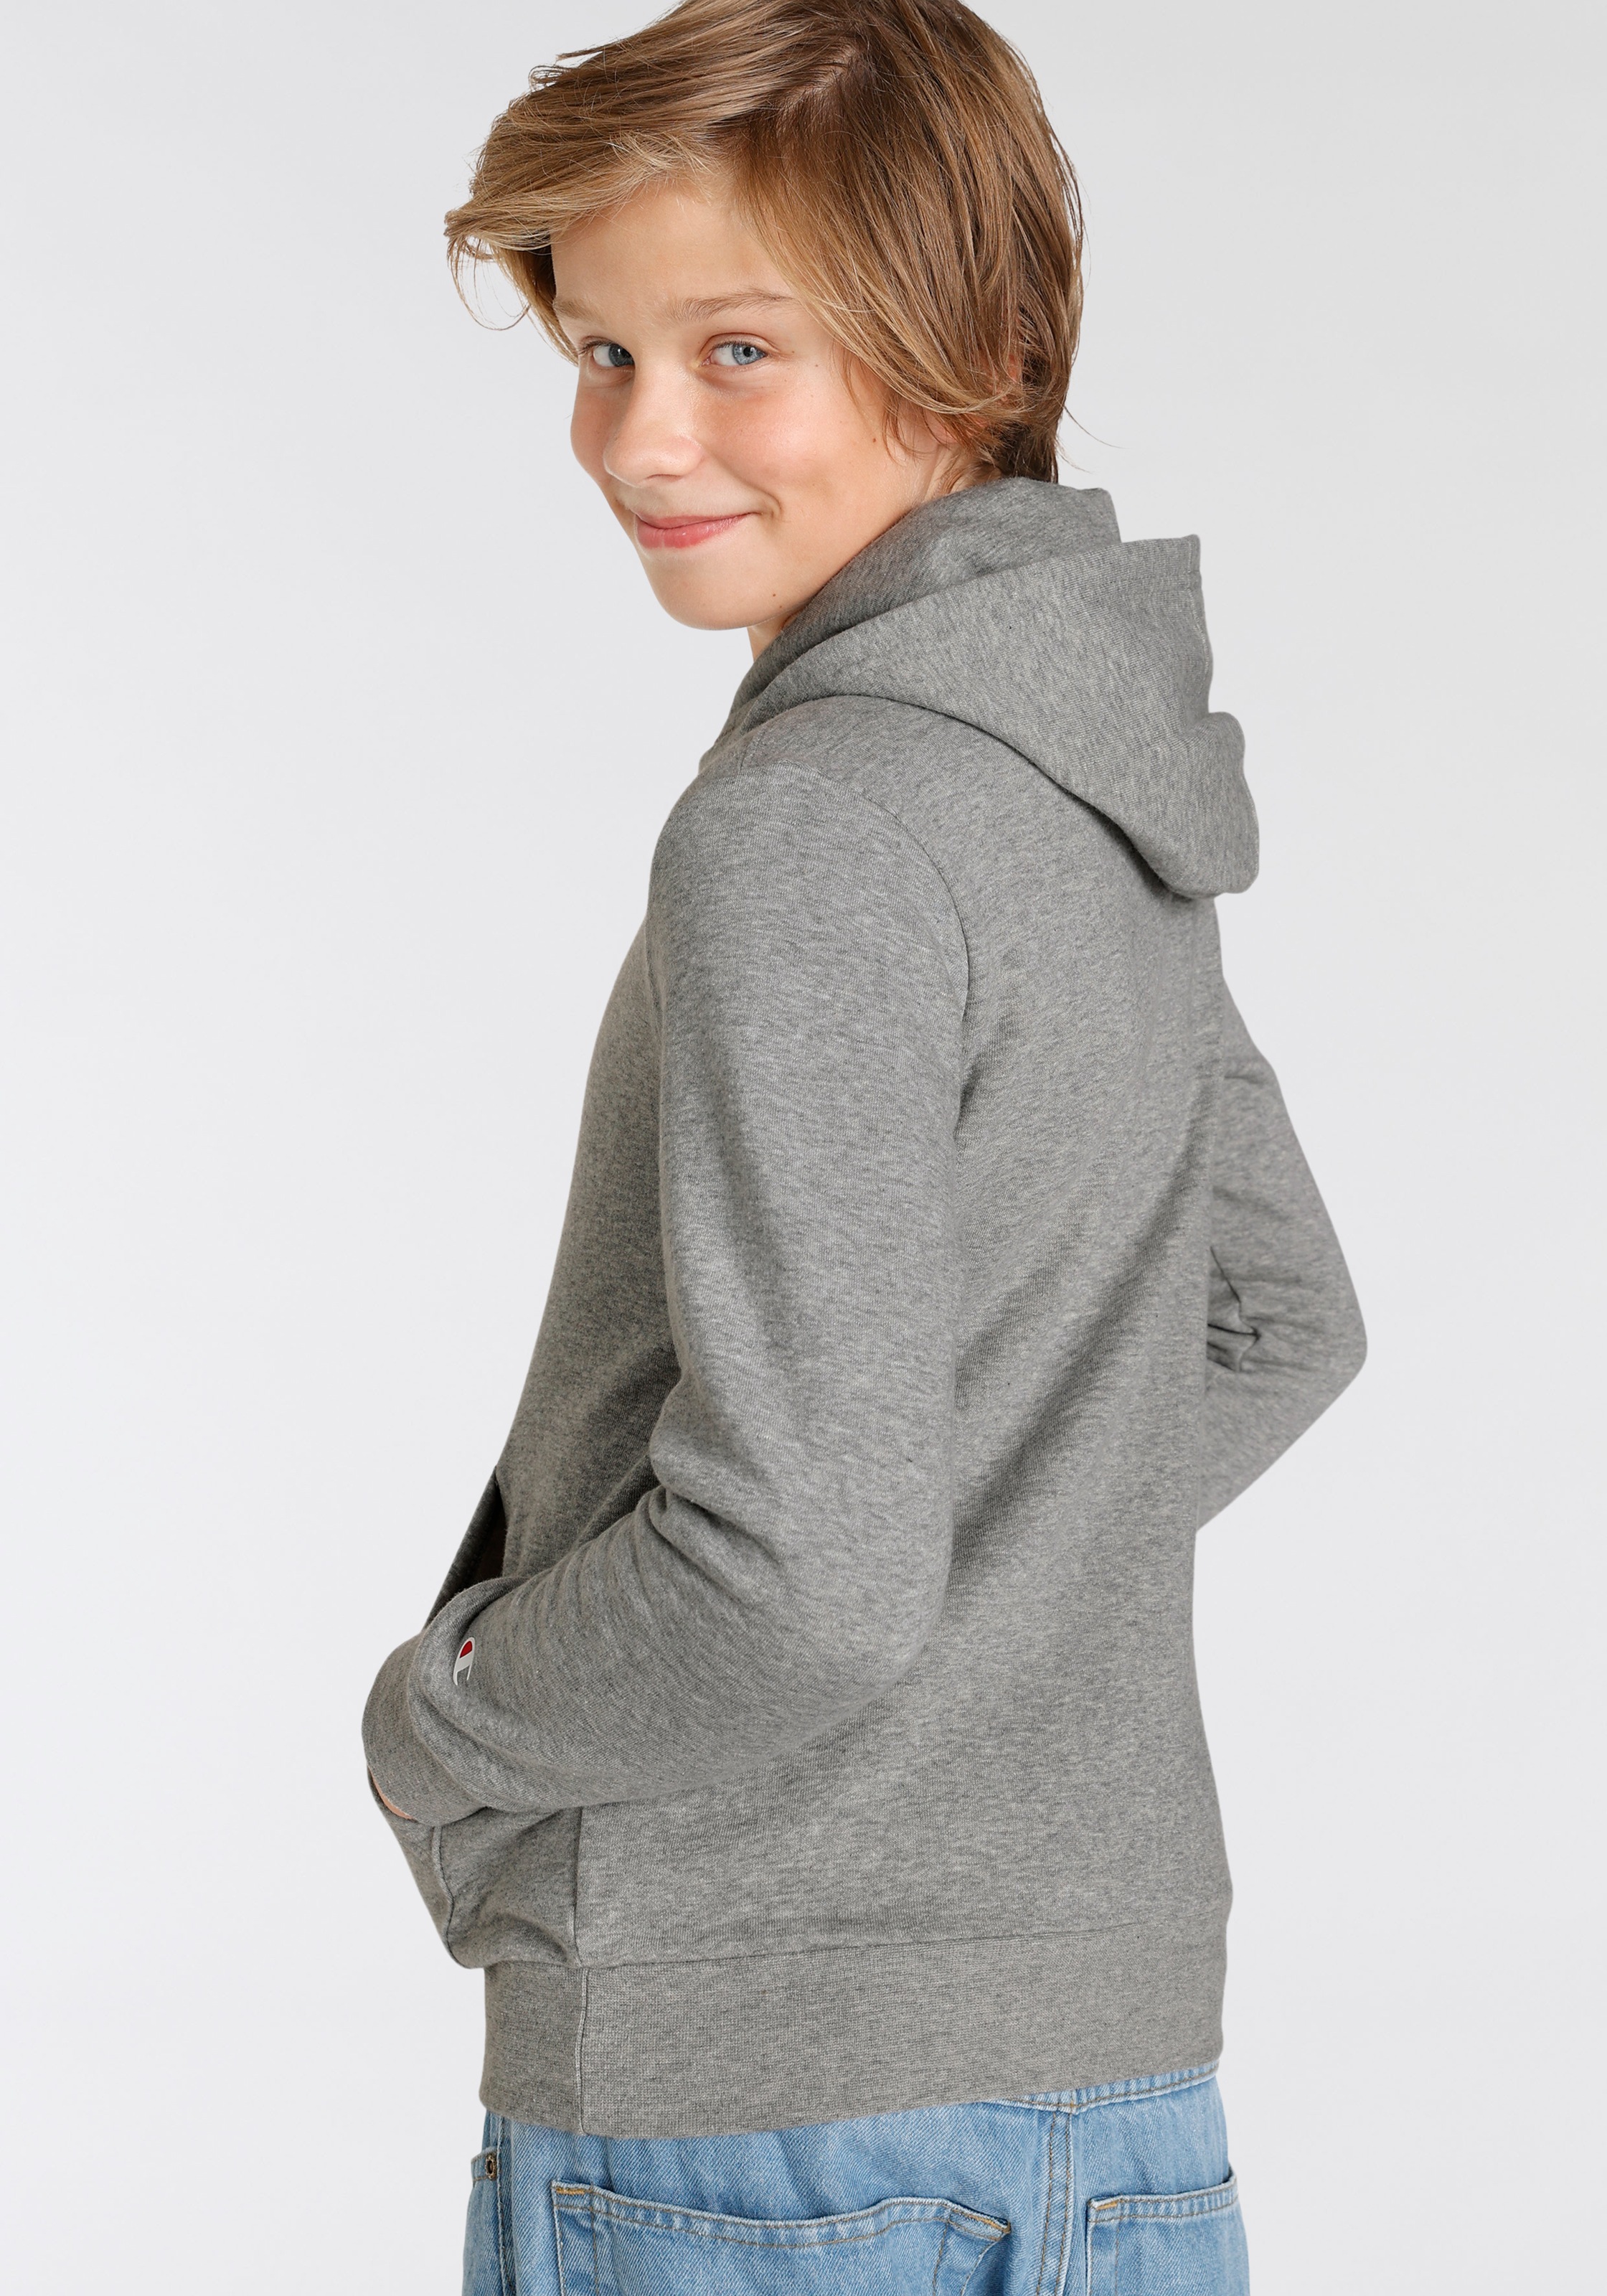 Online Sweatshirt für Hooded Sweatshirt Shop »Basic Kinder« - OTTO Champion im